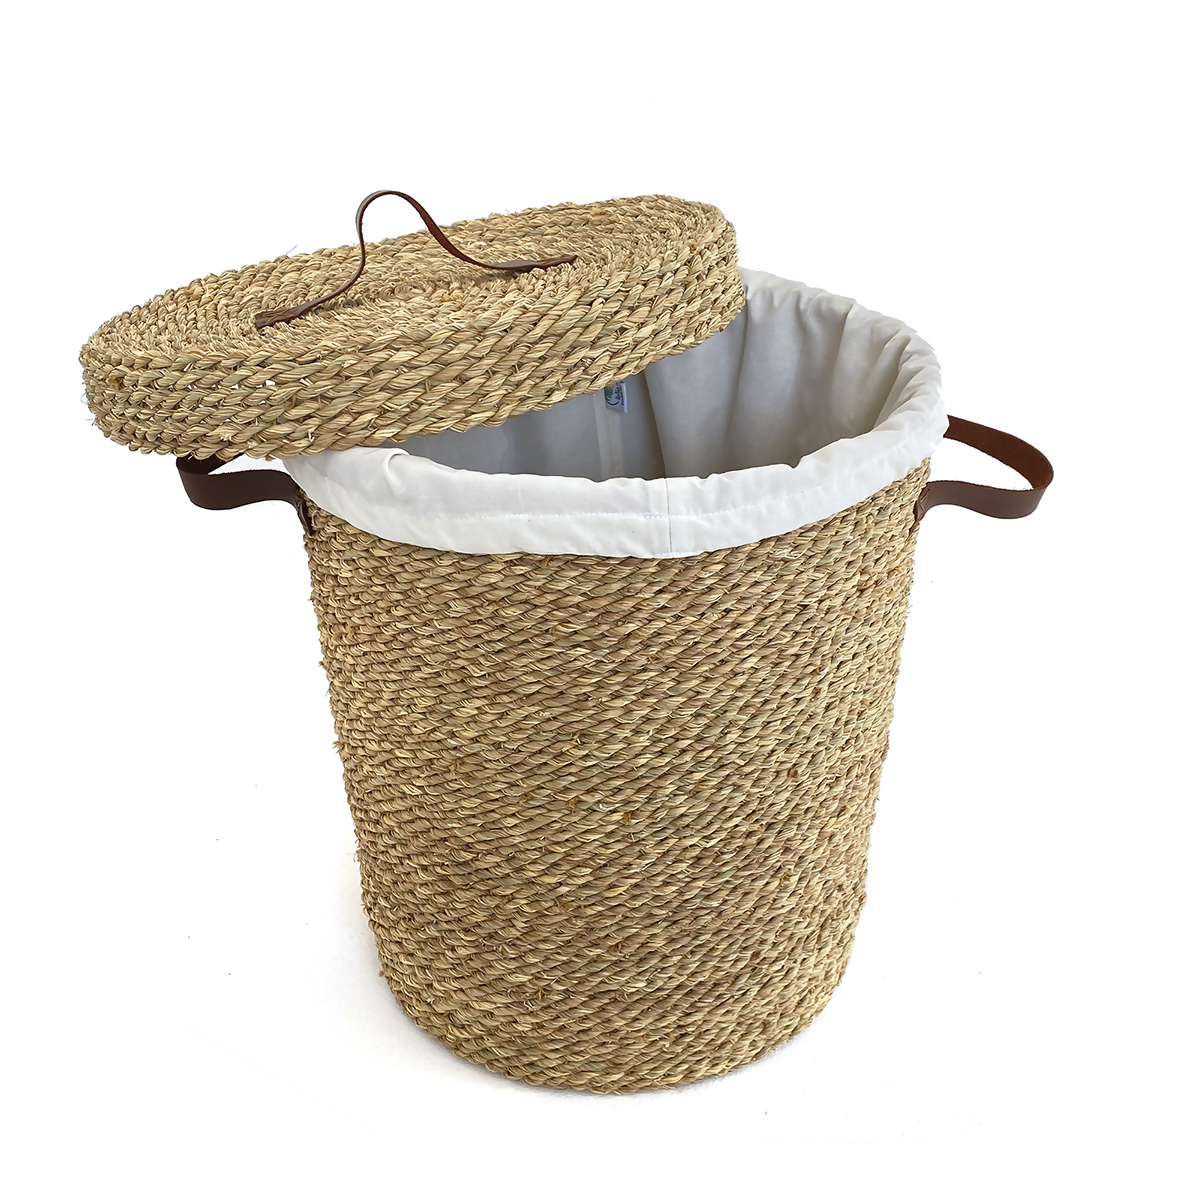 Halfa Laundry Basket with Hood & Leather Handle